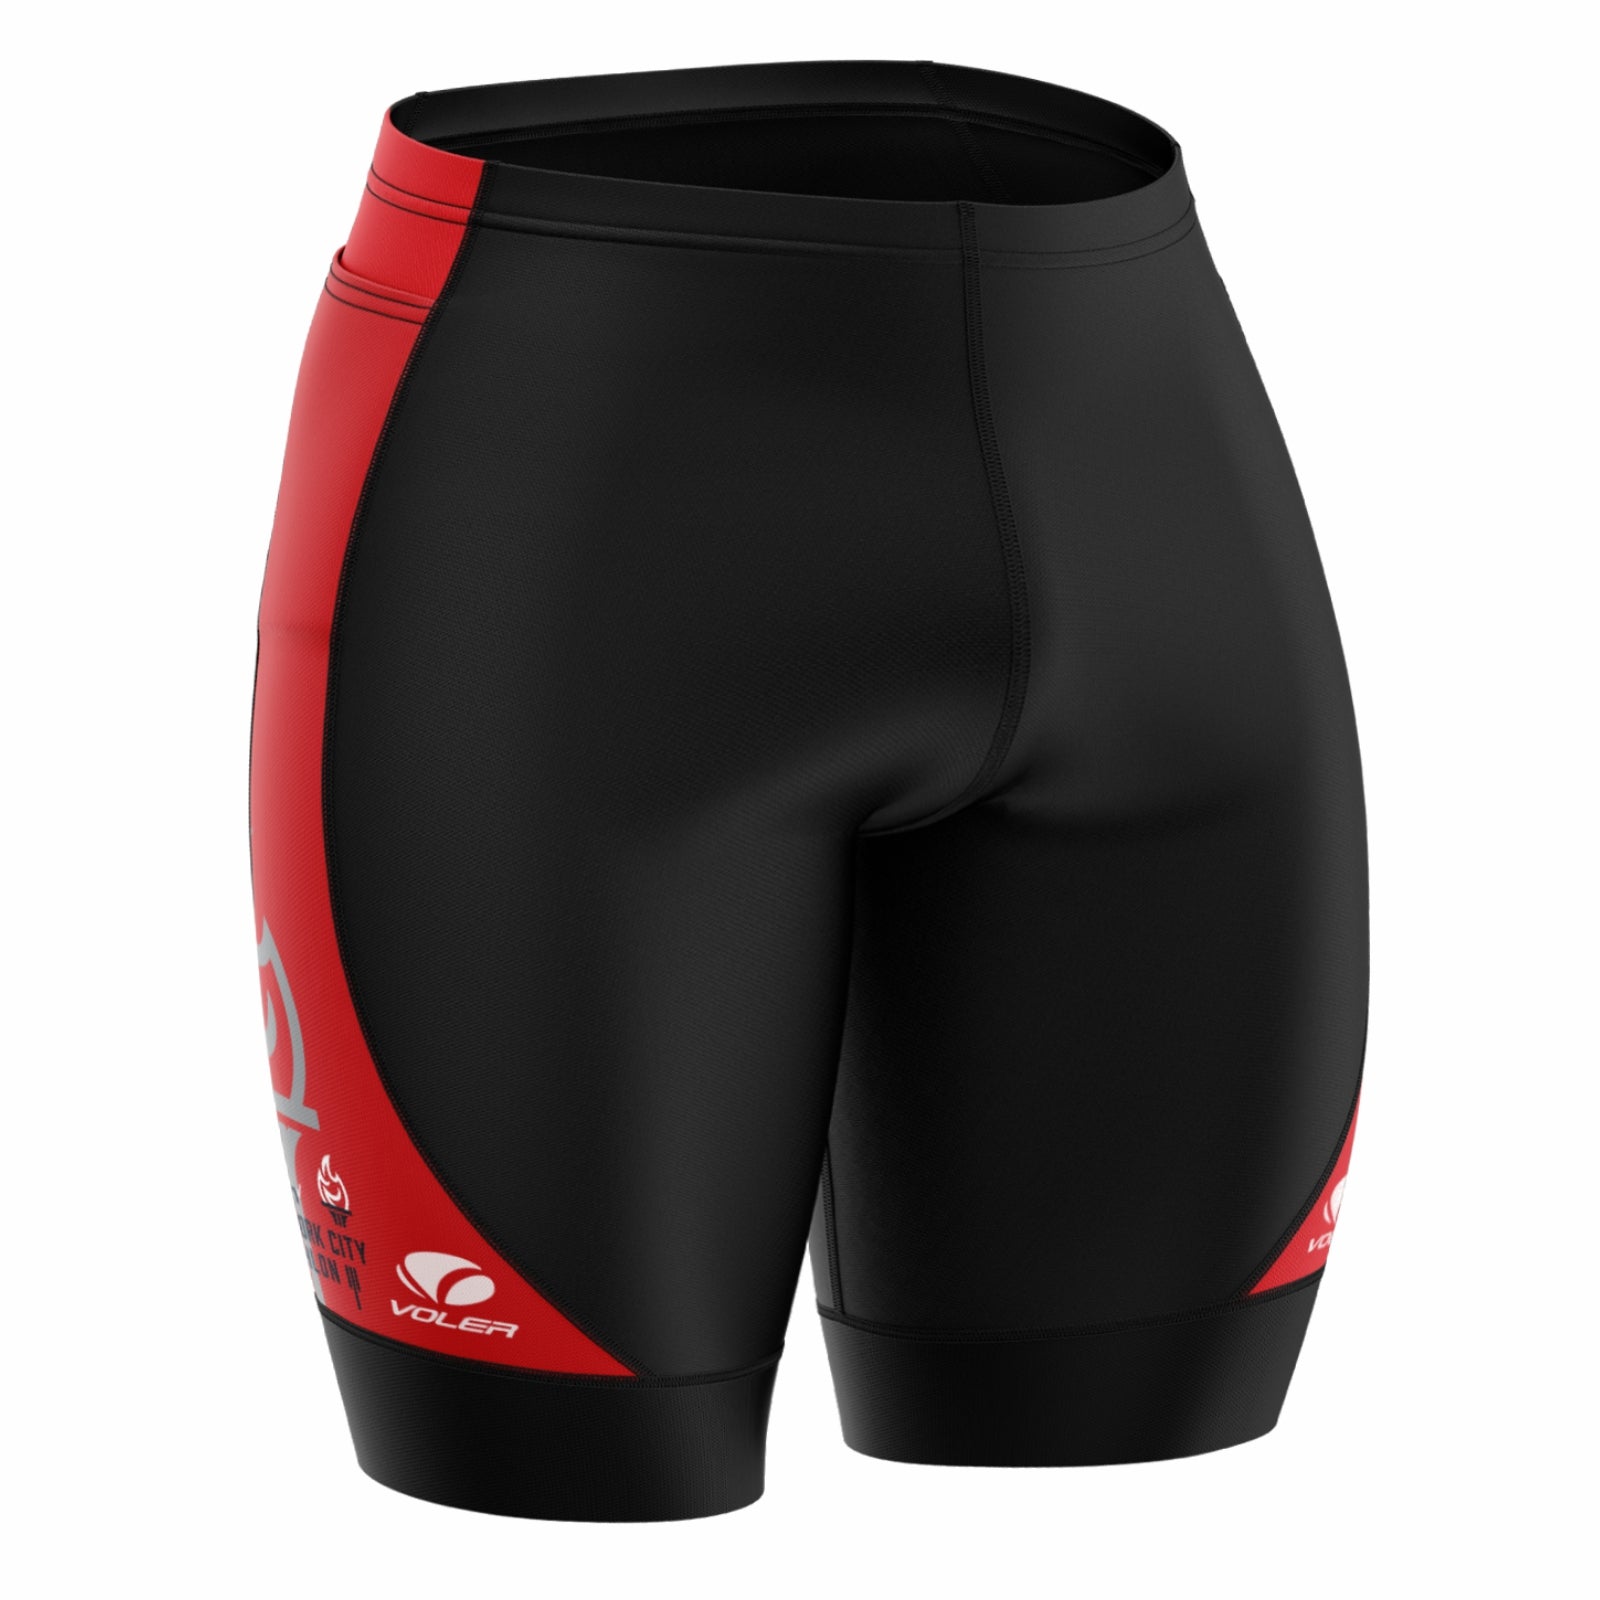 Women's Voler Tri-Shorts - Black/Red Sides - Torch